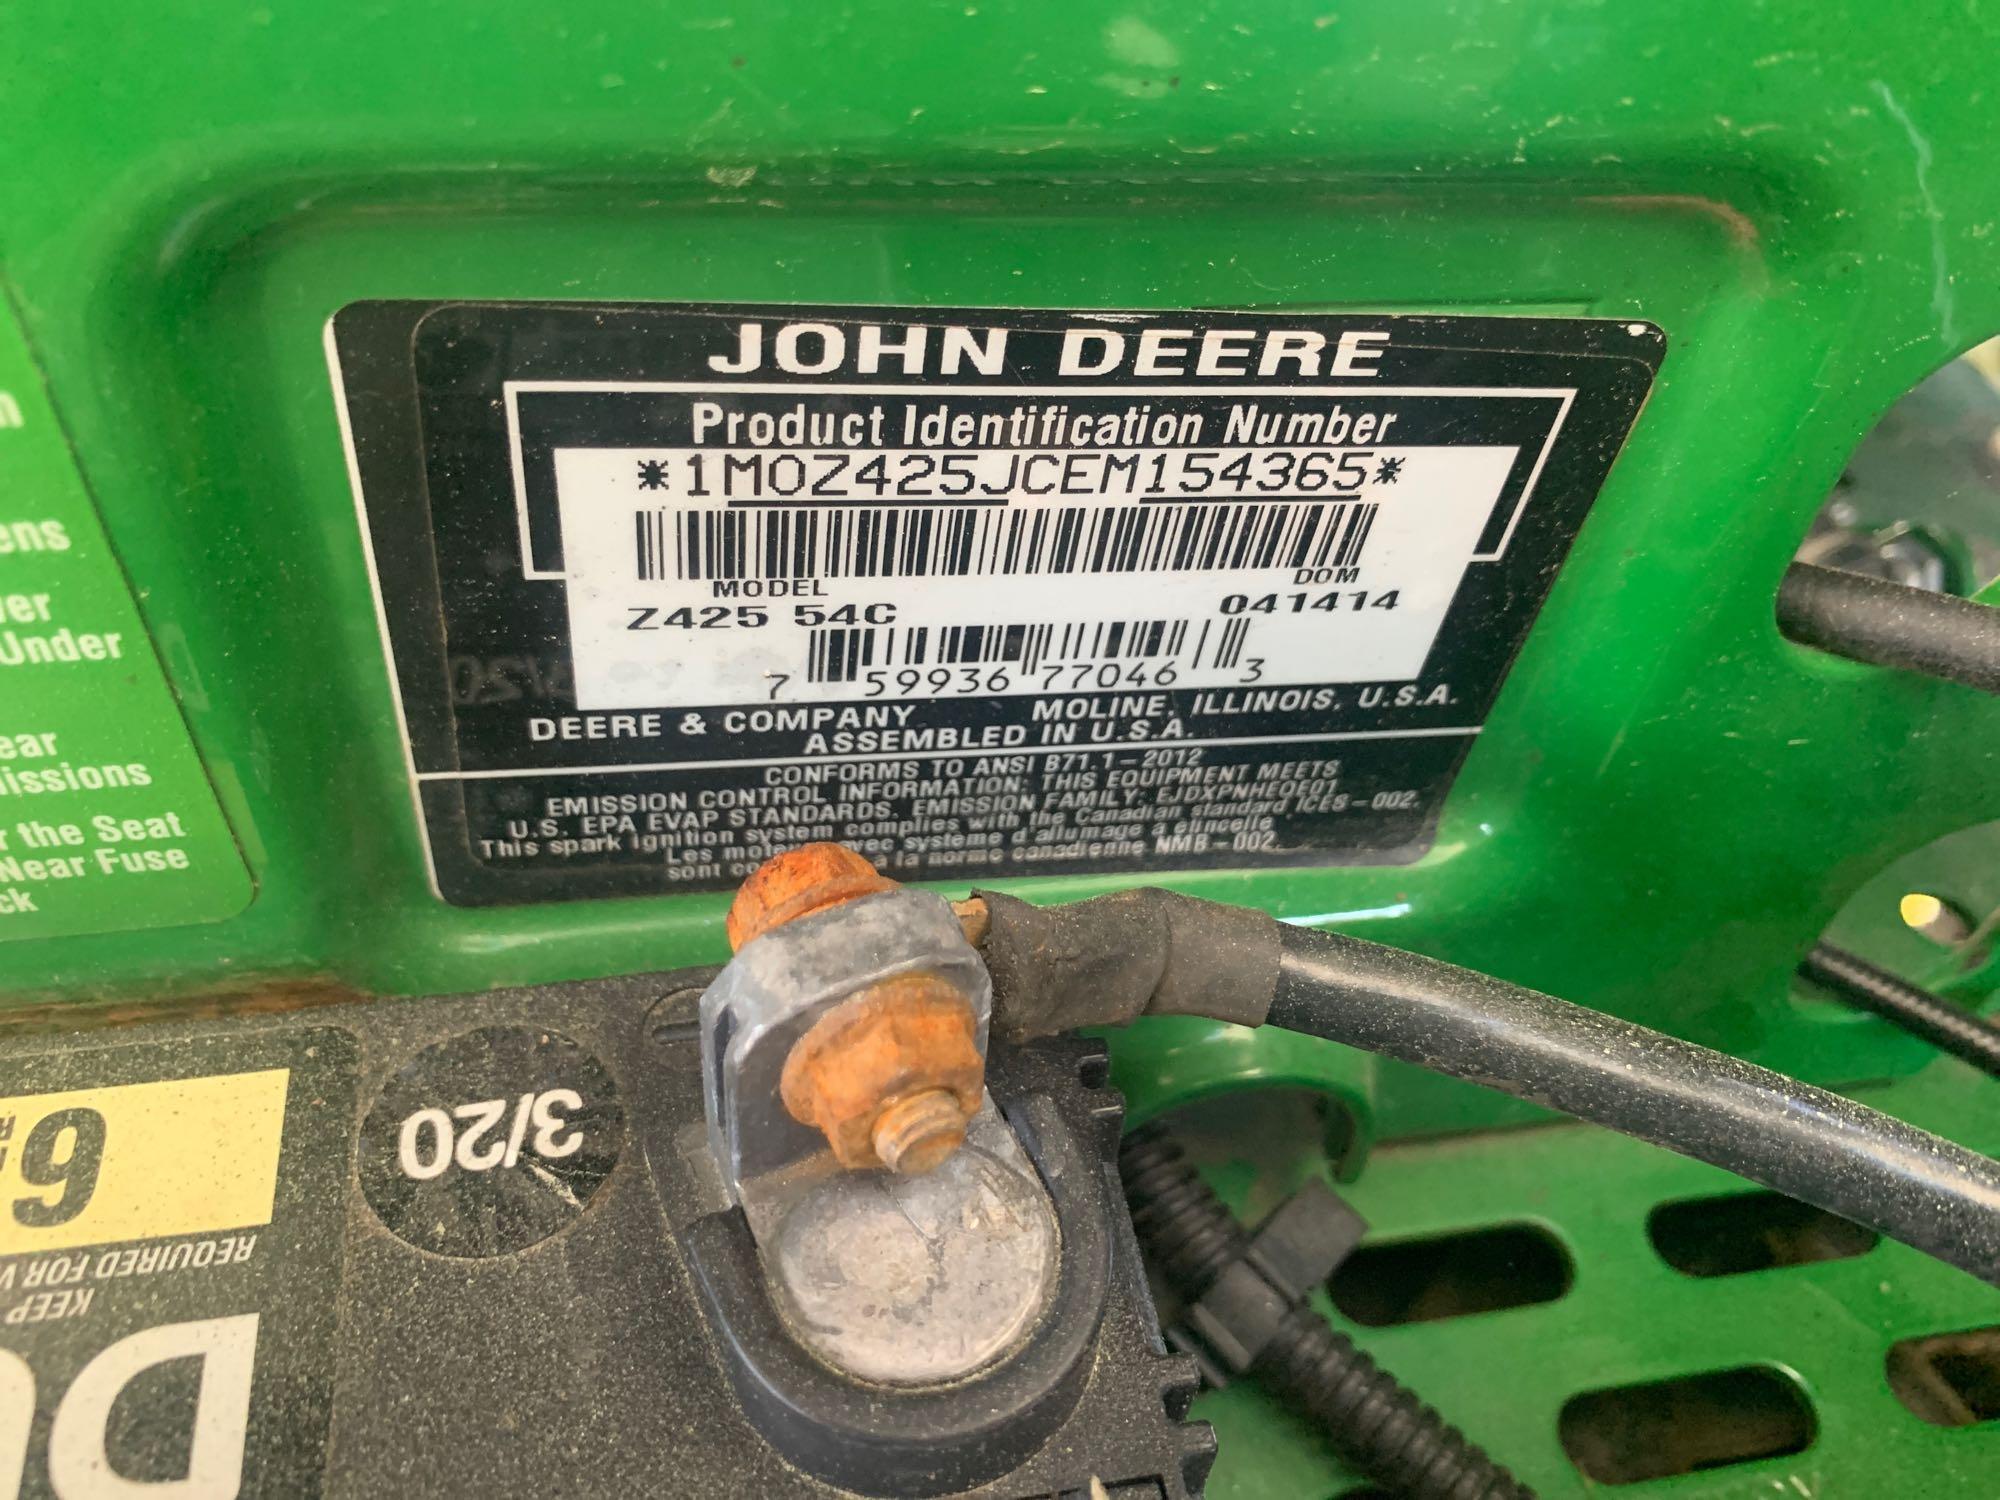 John Deere EZtrak Z425 Zero Turn Mower